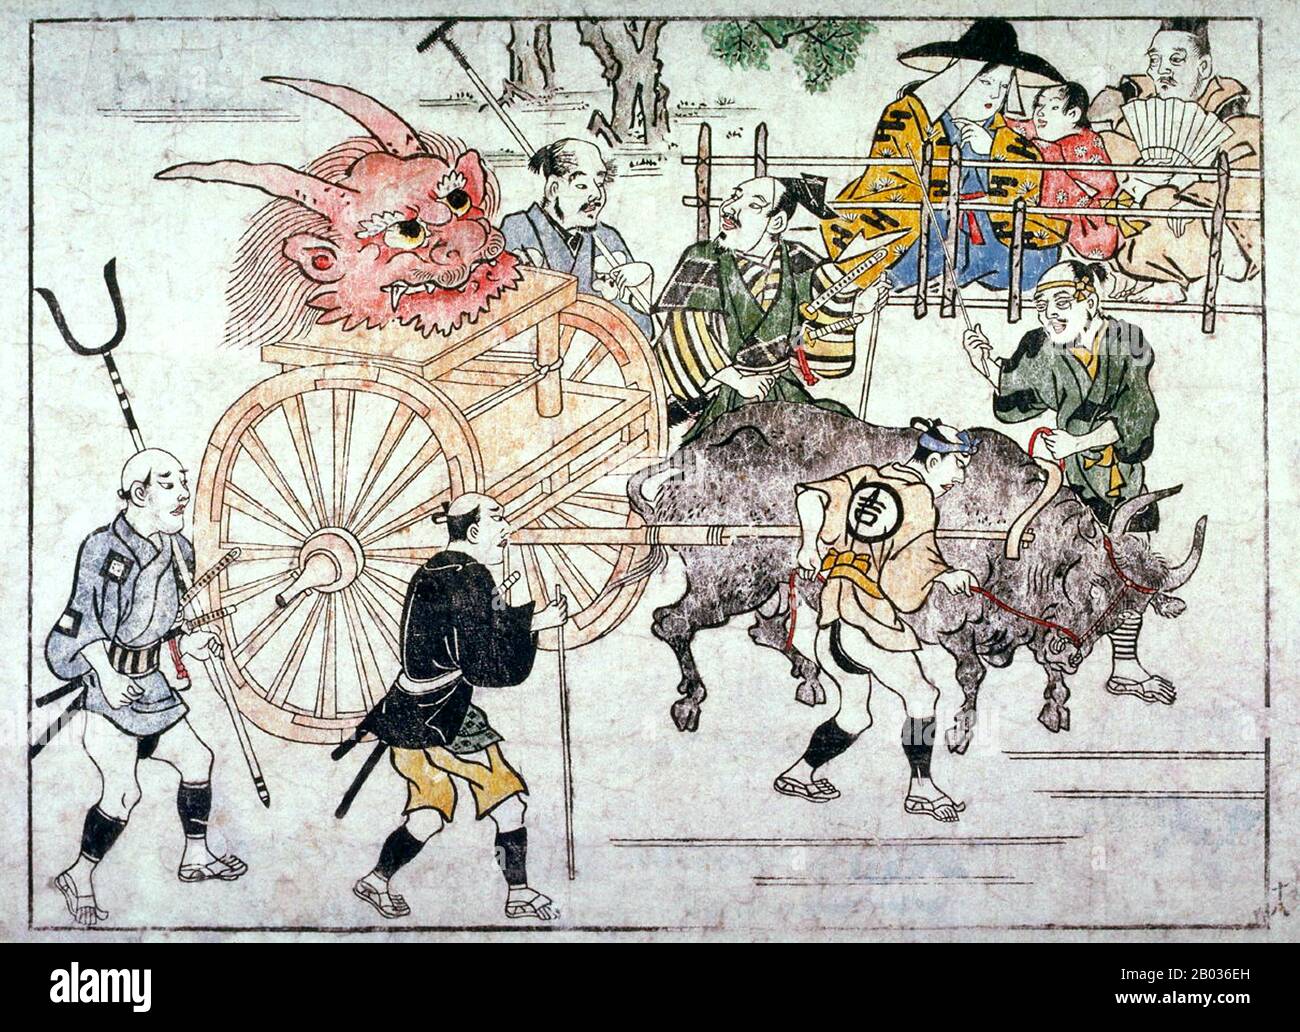 Shuten-doji ou Shutendoji est un oni mythique ou un yokai (démon, diable, ogre, troll). Hihikawa Moronobu (1618 – 25 juillet 1694) était un artiste japonais connu pour populariser le genre ukiyo-e de gravures et de peintures de bois à la fin du XVIIe siècle. Banque D'Images